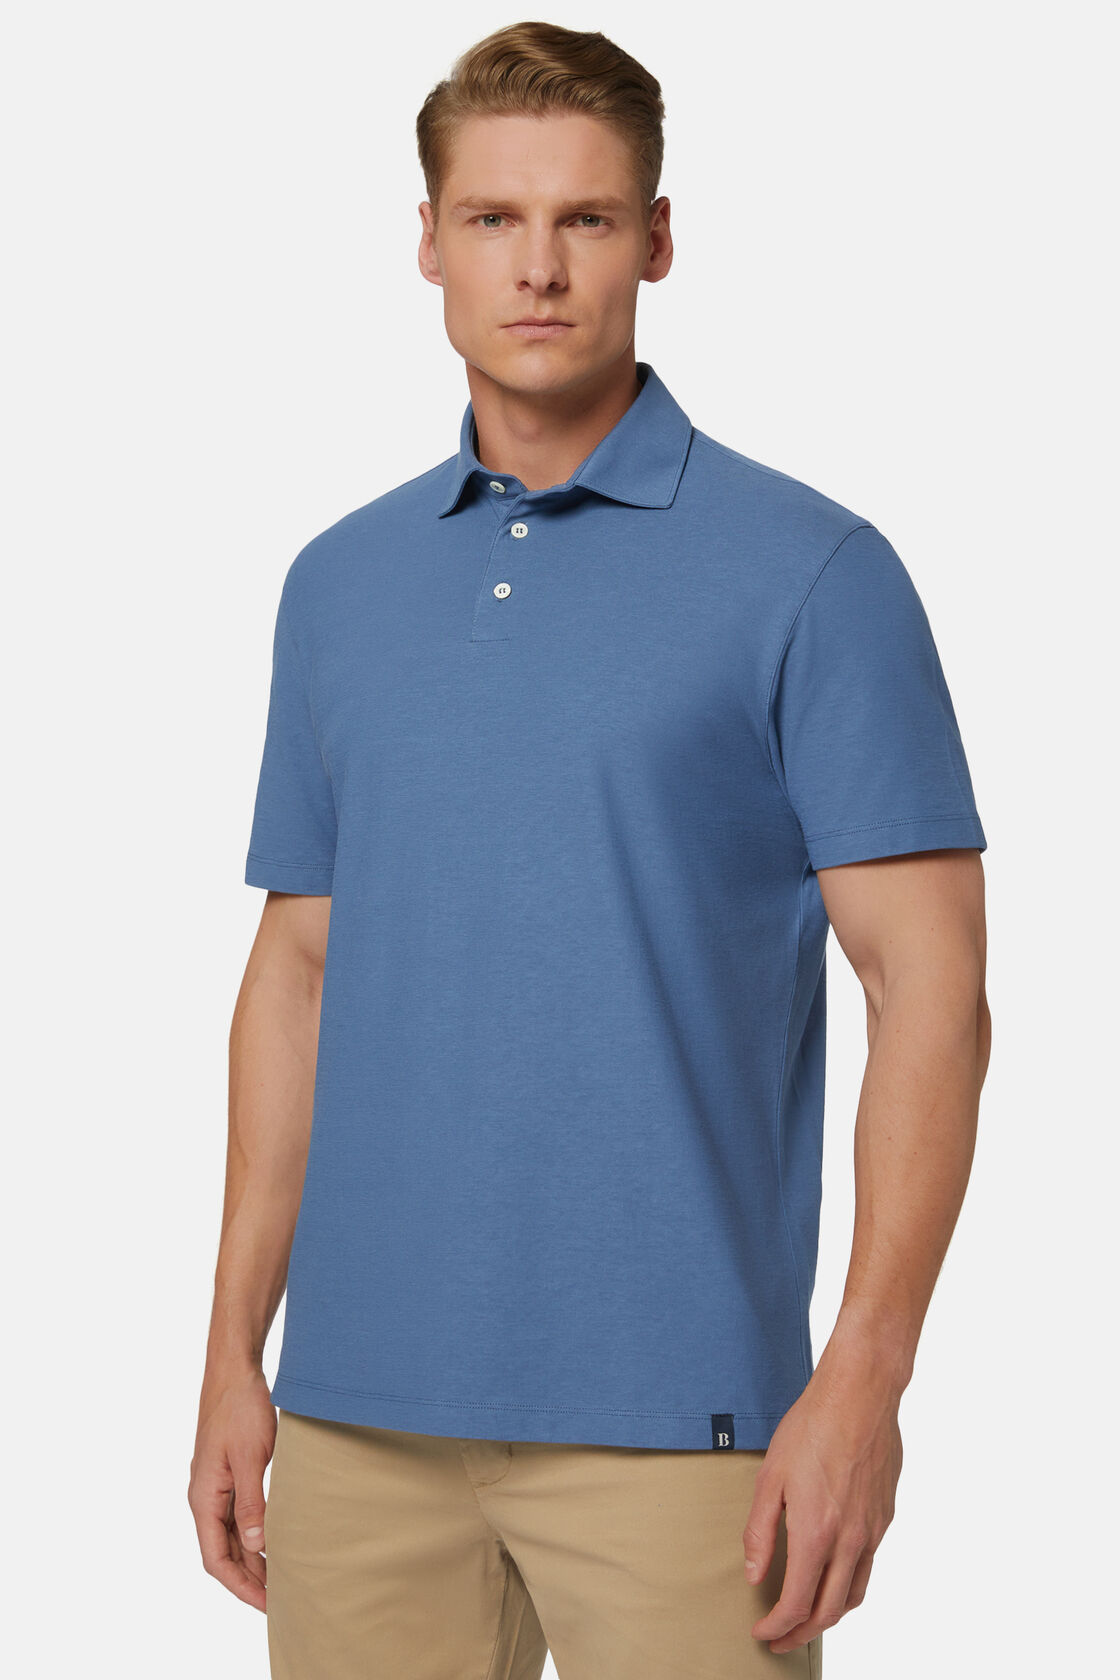 Cotton Crepe Jersey Polo Shirt, Indigo, hi-res